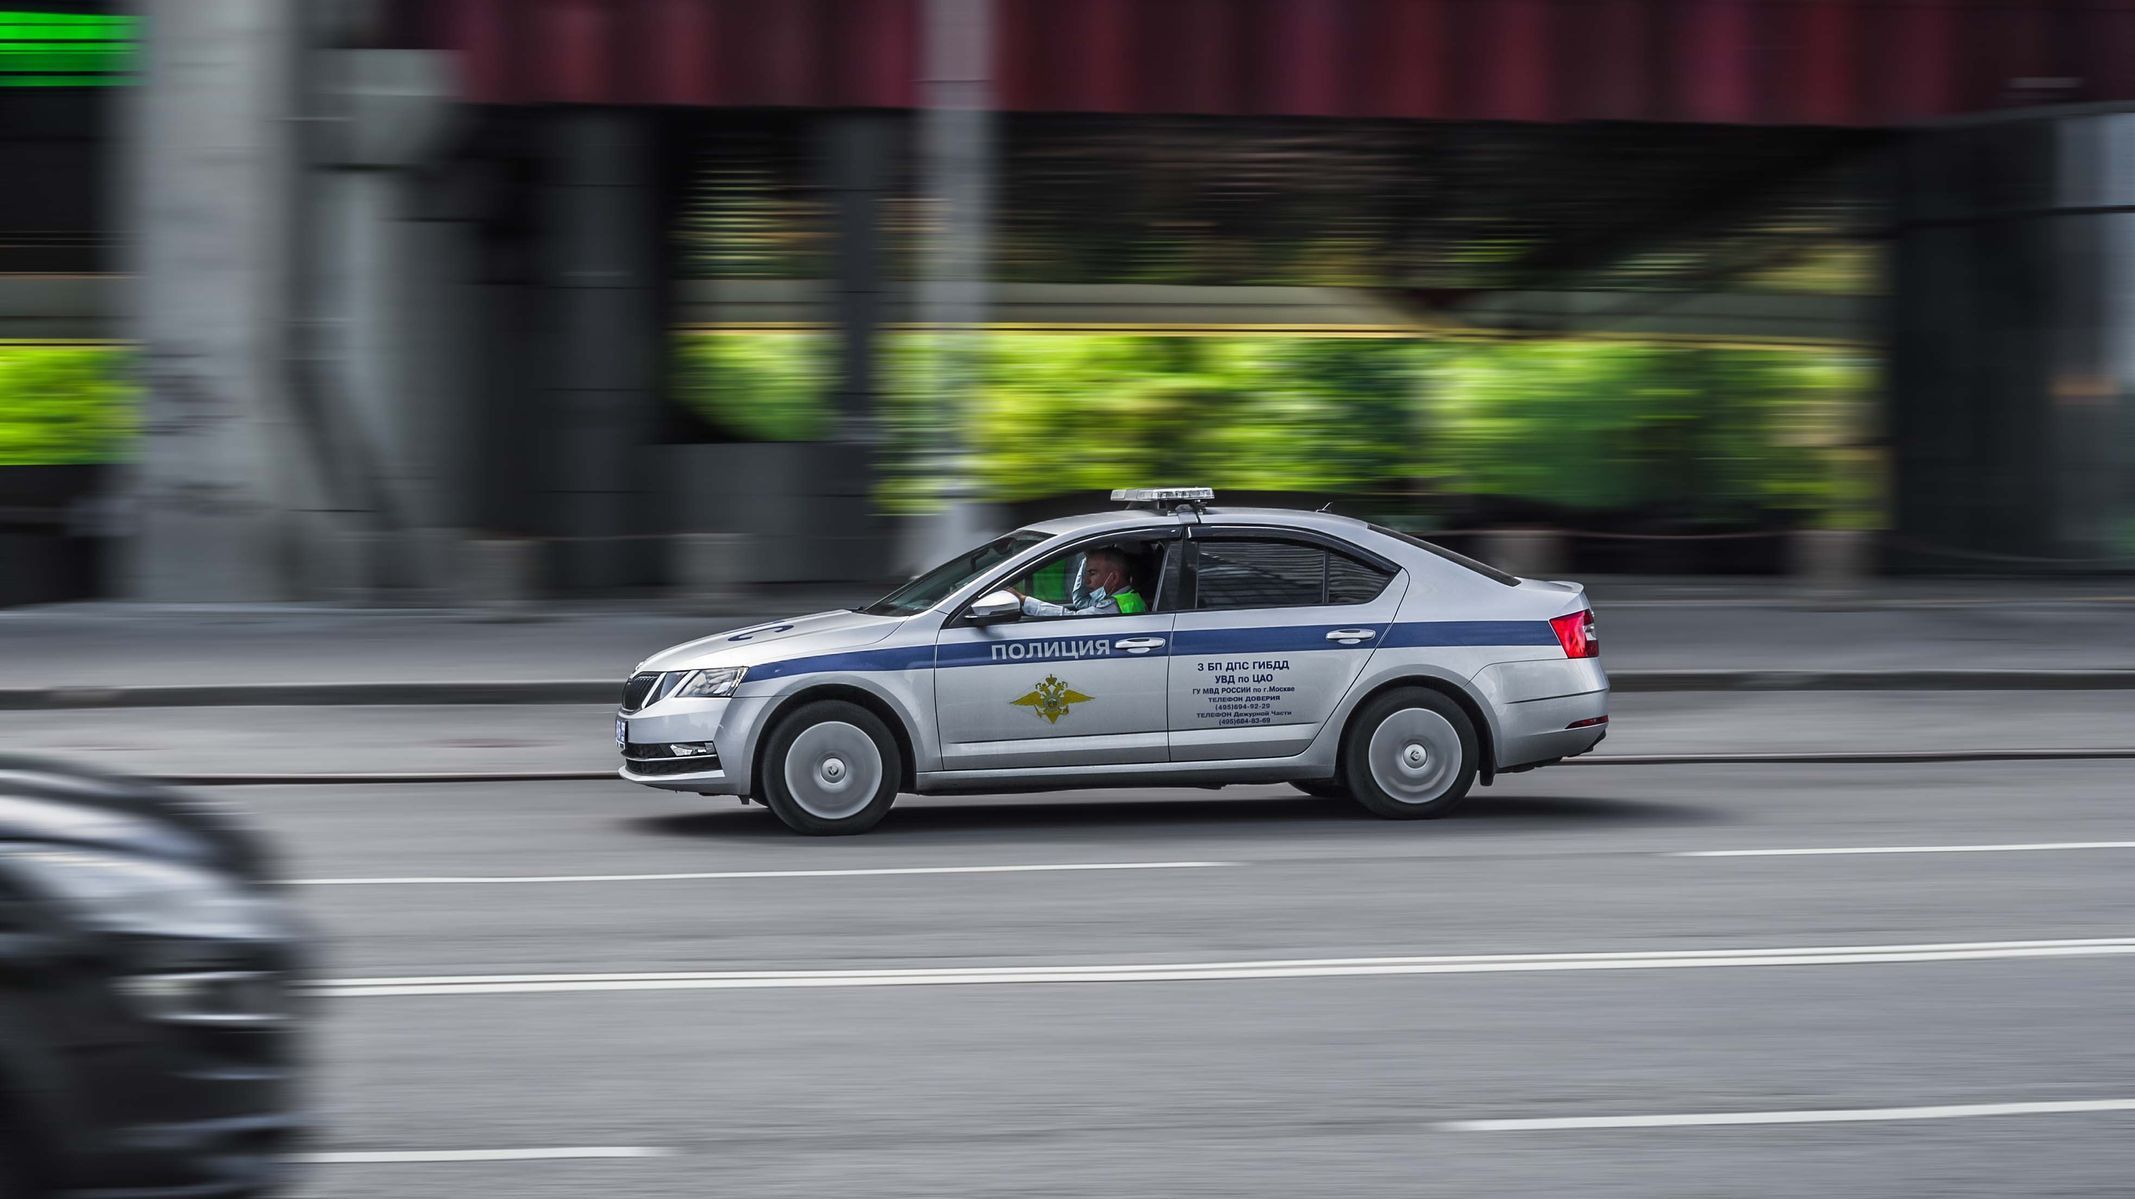 Ruské policejní auto, Škoda Octavia